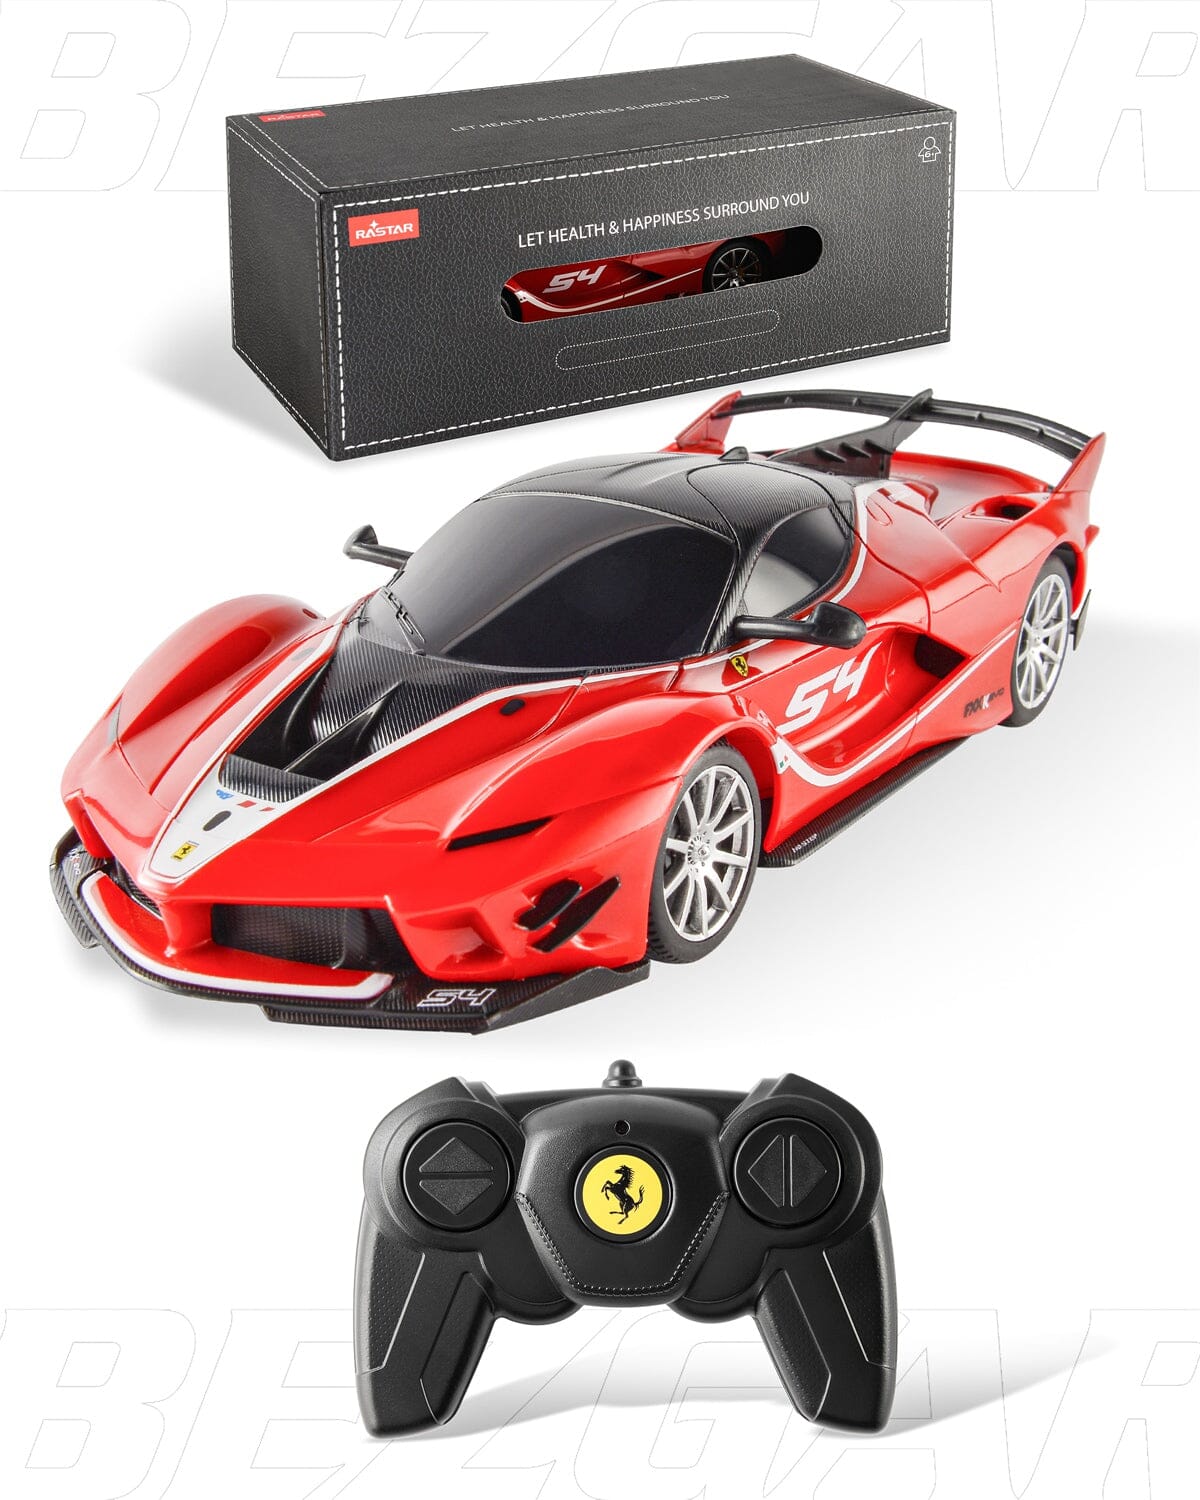 Voiture Ferrari radiocommandée Shop Radiocommandé 